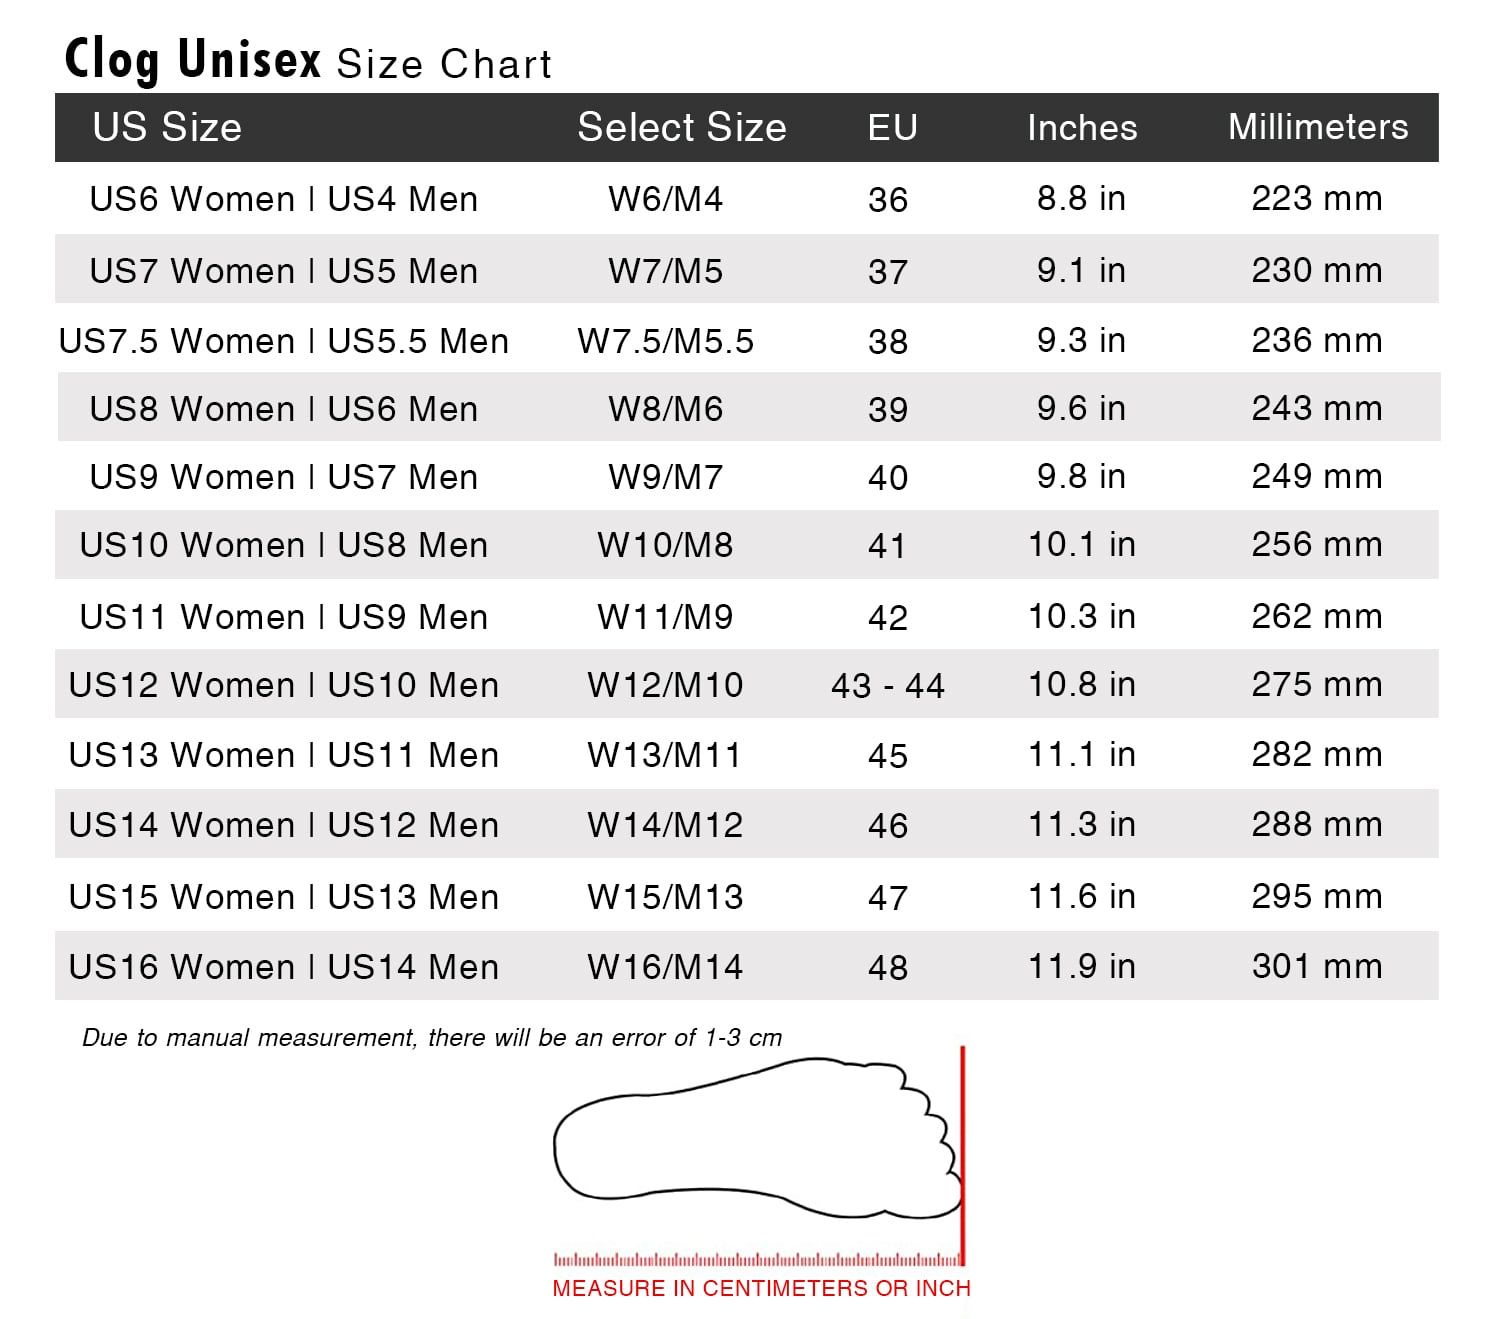 Clog Unisex Size Chart